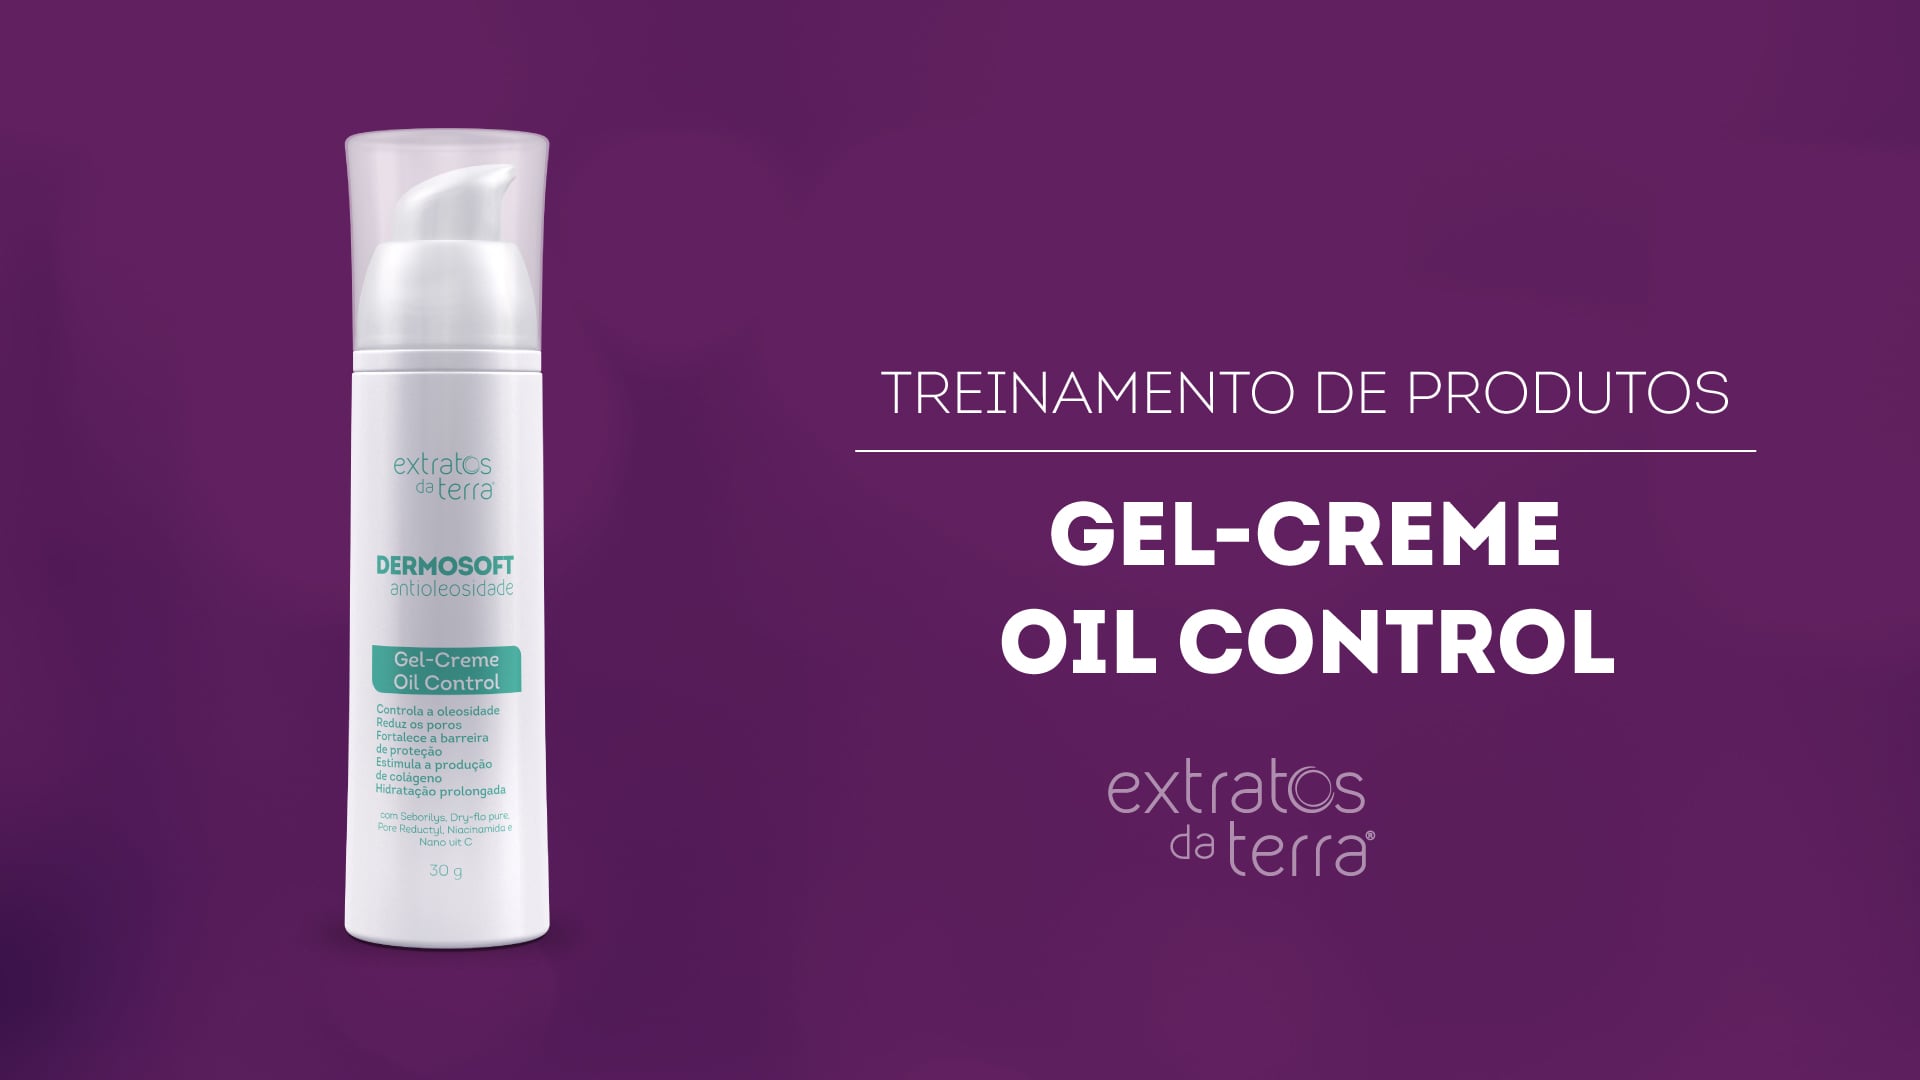 Conhecendo o Produto - Dermosoft Antioleosidade Gel-Creme Oil Control